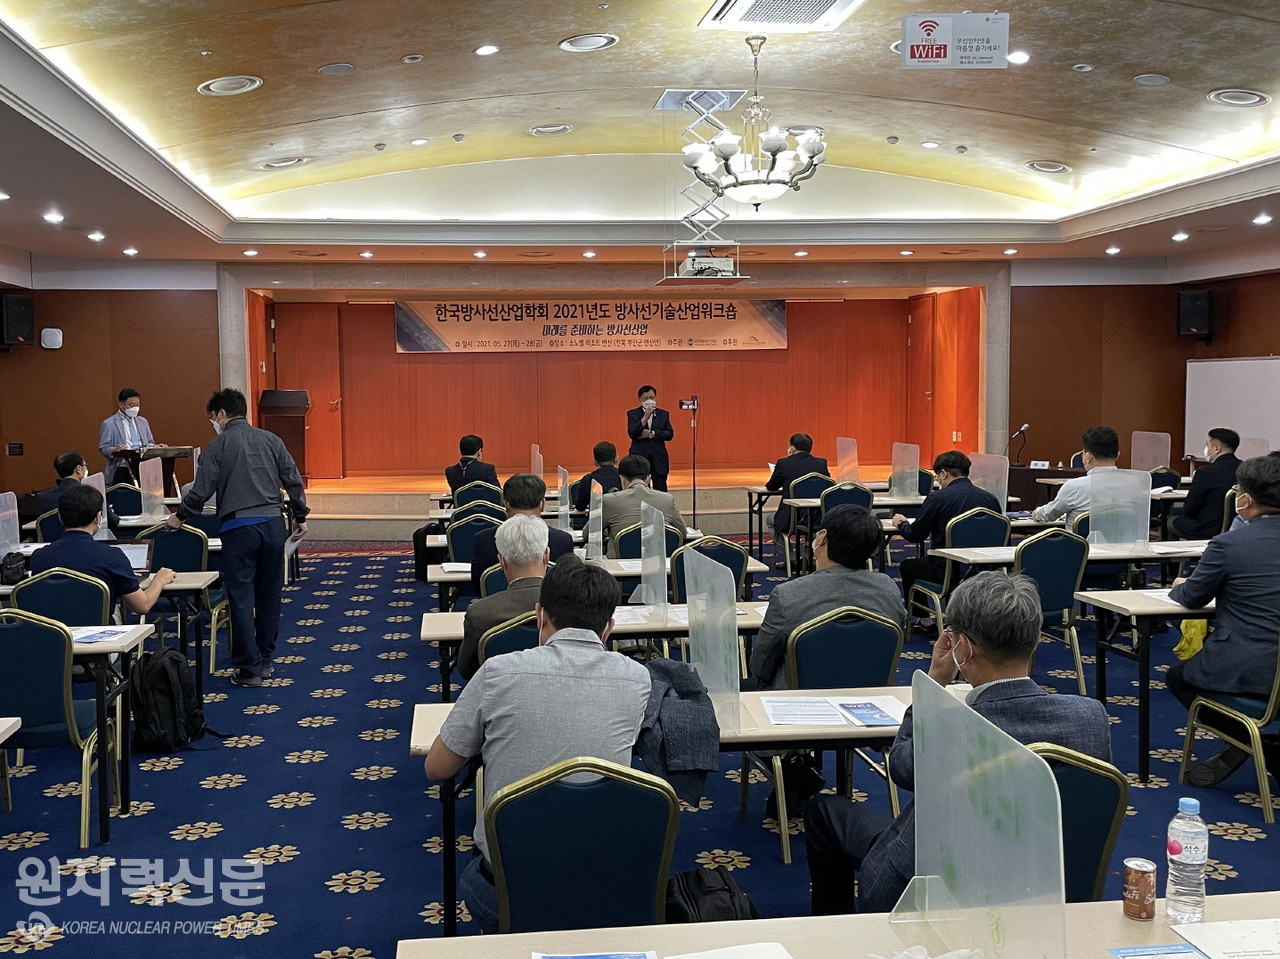 한국방사선산업학회가 부안 소노벨리조트 변산에서 개최한 '2021년도 방사선기술산업워크숍 개회식' 장면.